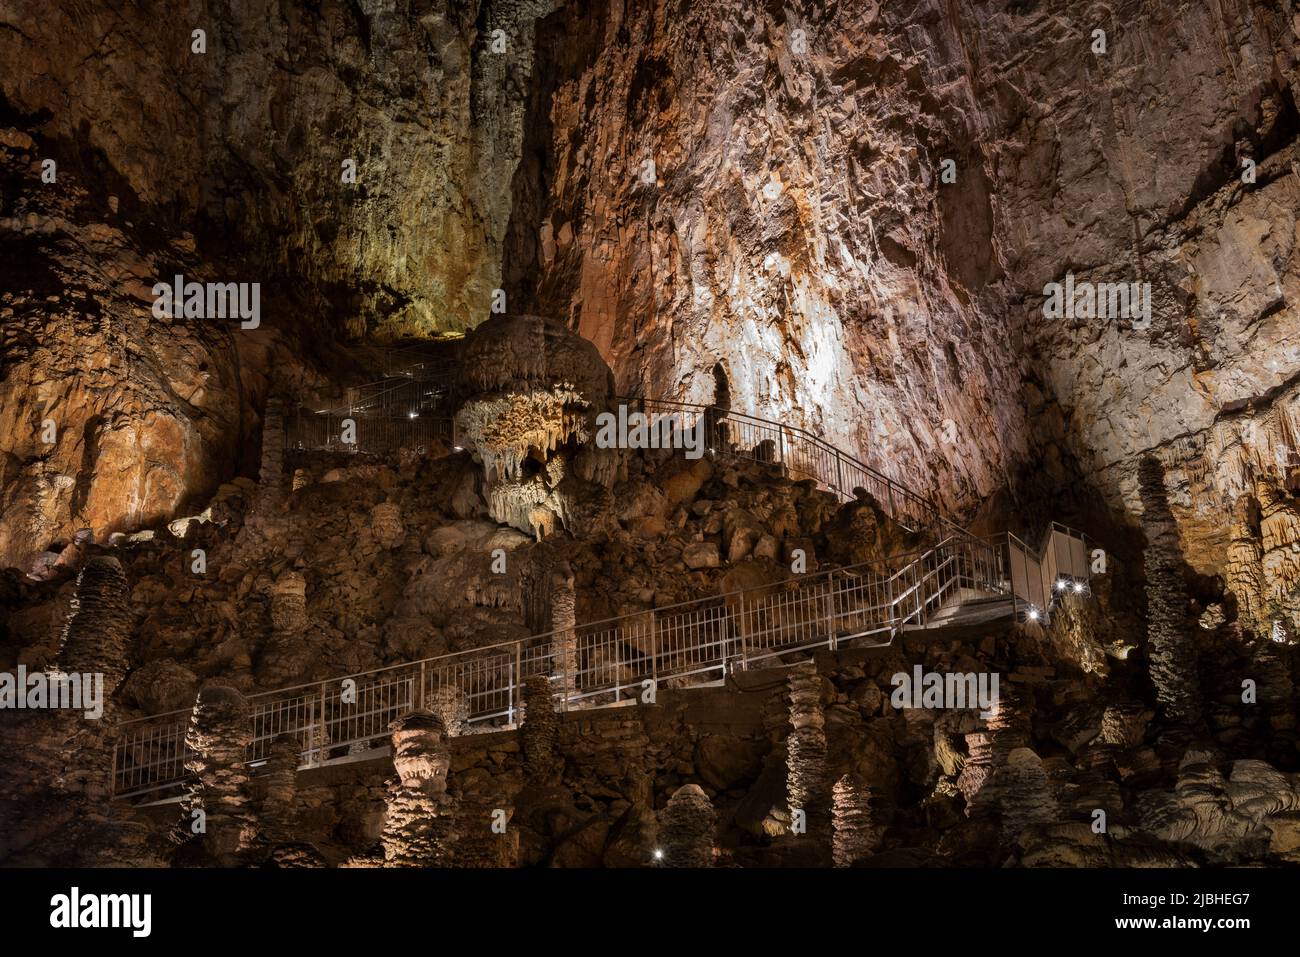 La Grotta Gigante es una cueva gigante en el lado italiano del Trieste Karst (Carso). Su caverna central es la cueva de espectáculos más grande del mundo. Foto de stock